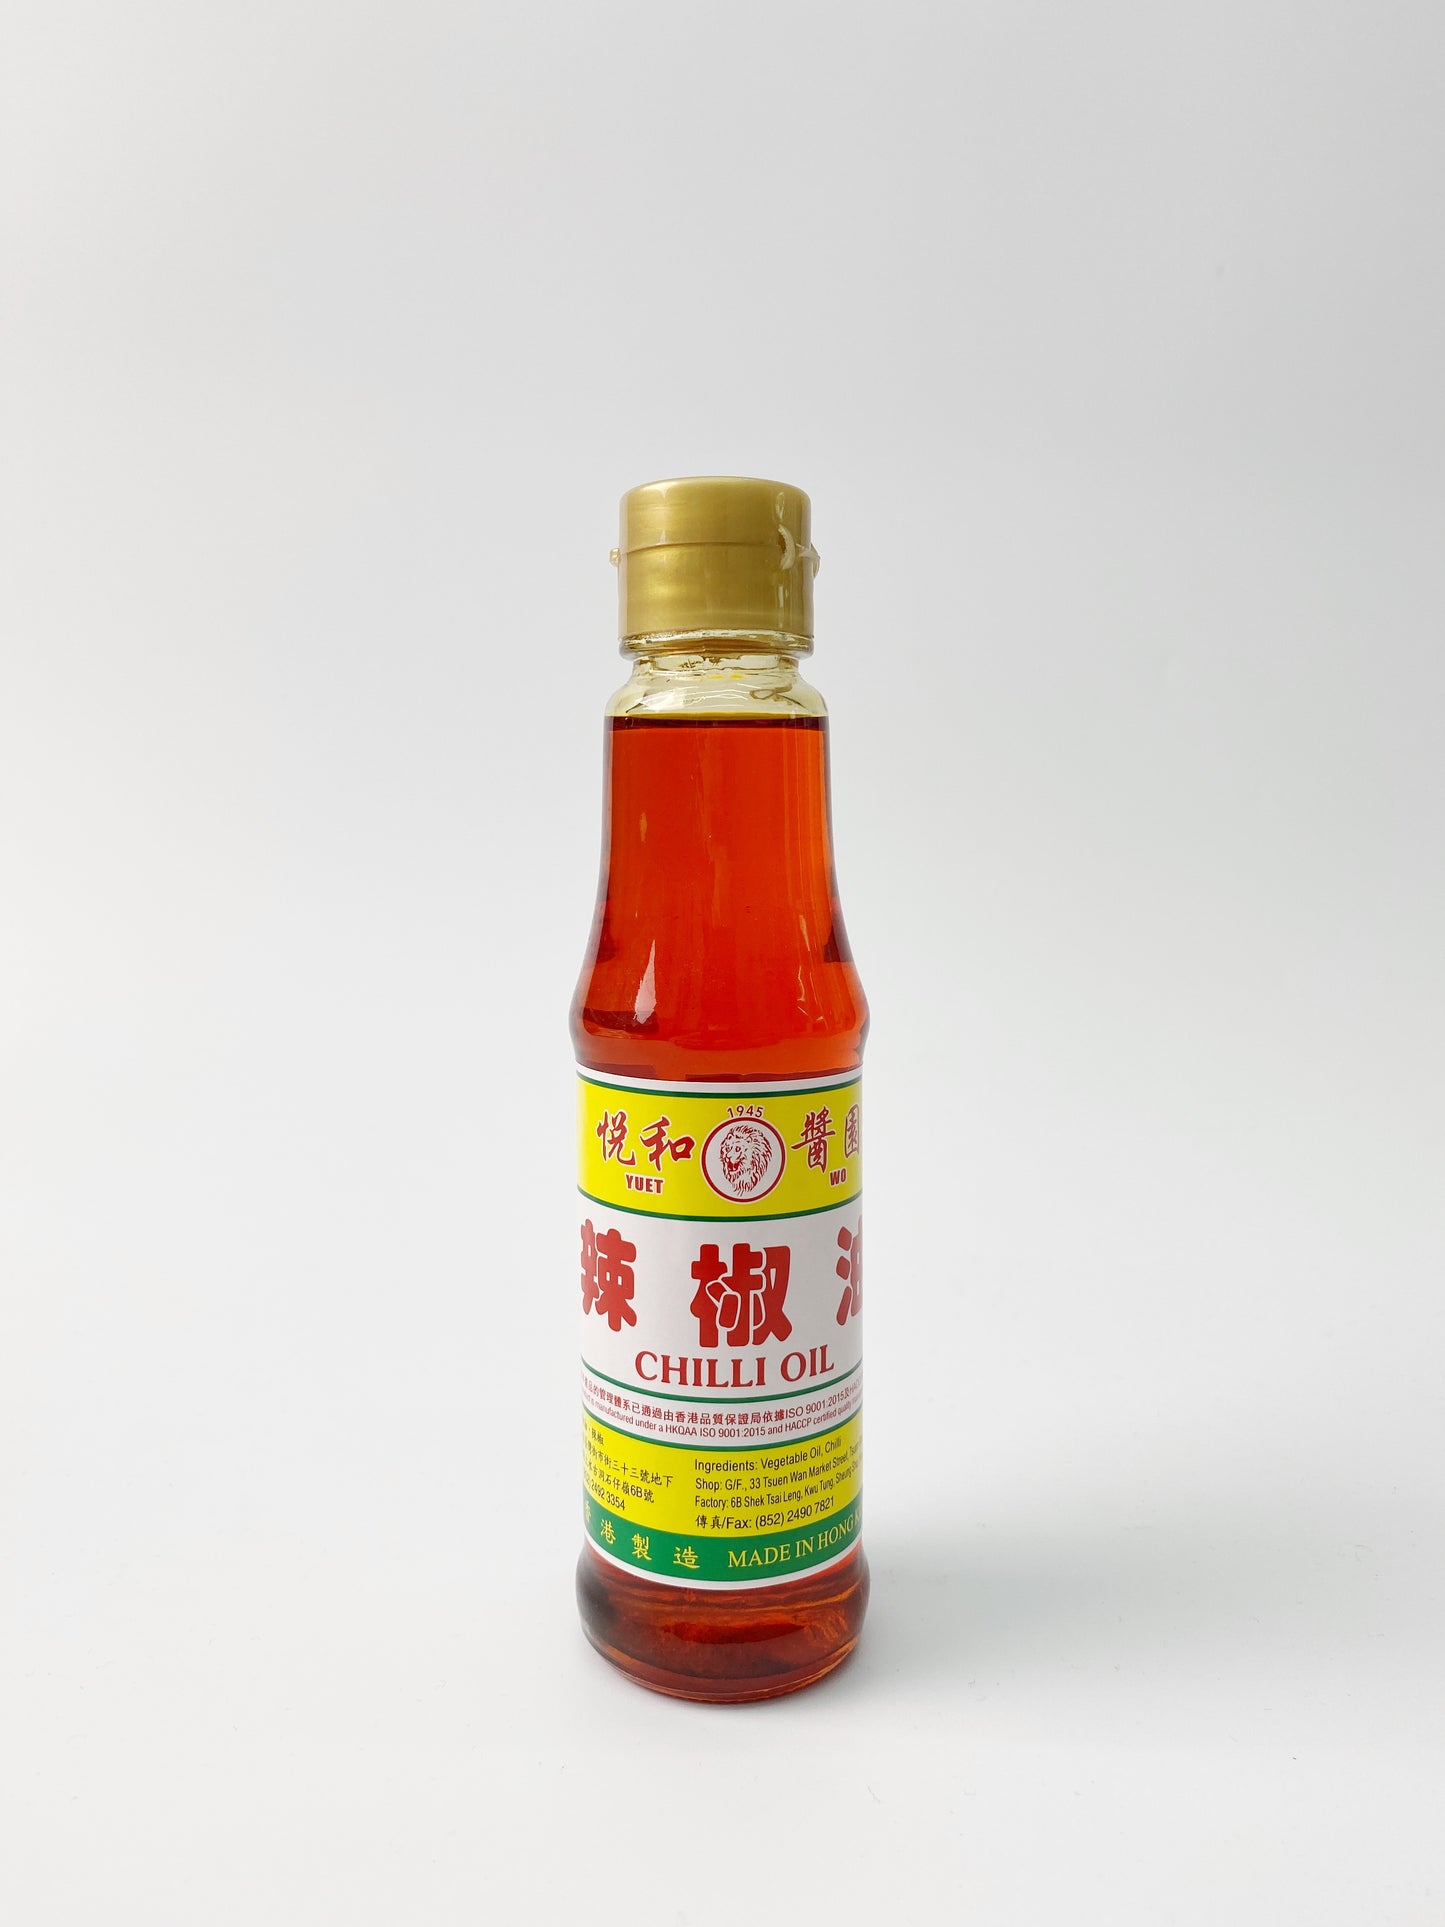 悅和醬園辣椒油 | Yuet Wo Chili Oil (150ml)